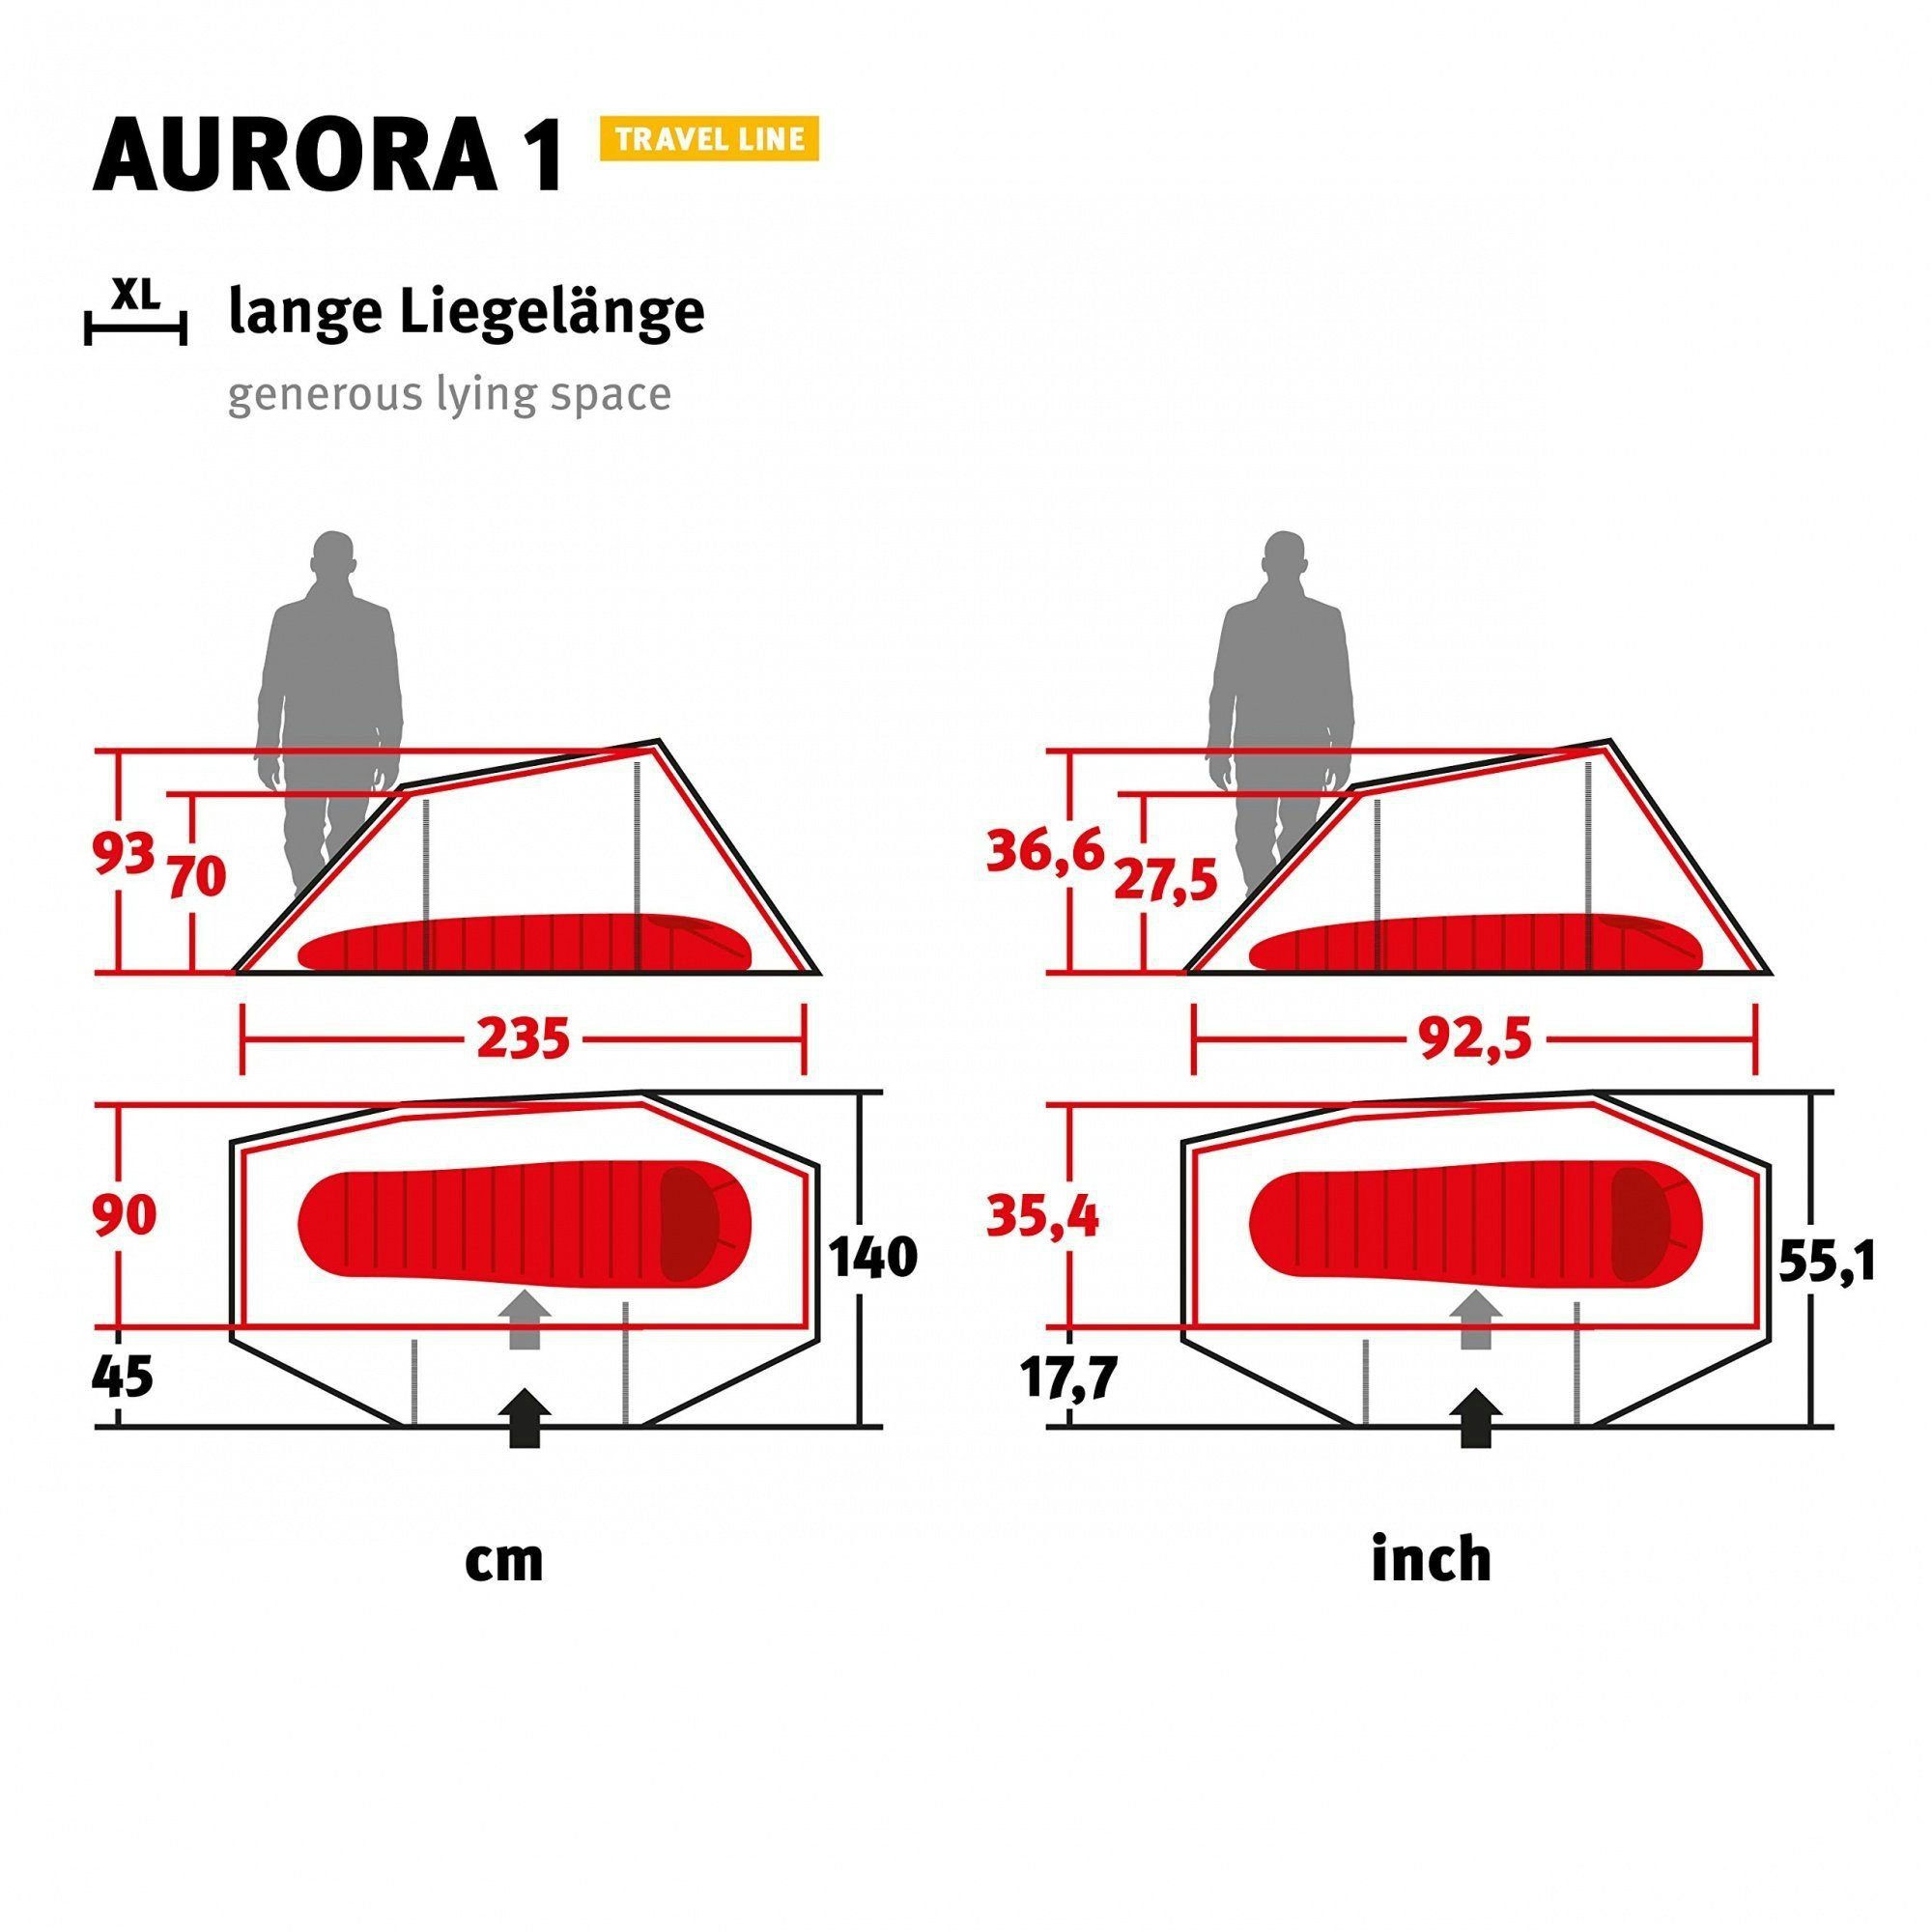 Wechsel Tents Tunnelzelt Aurora 1-Personen-Zelt, Travel Line 1 - 1 Personen: Tunnelzelt 